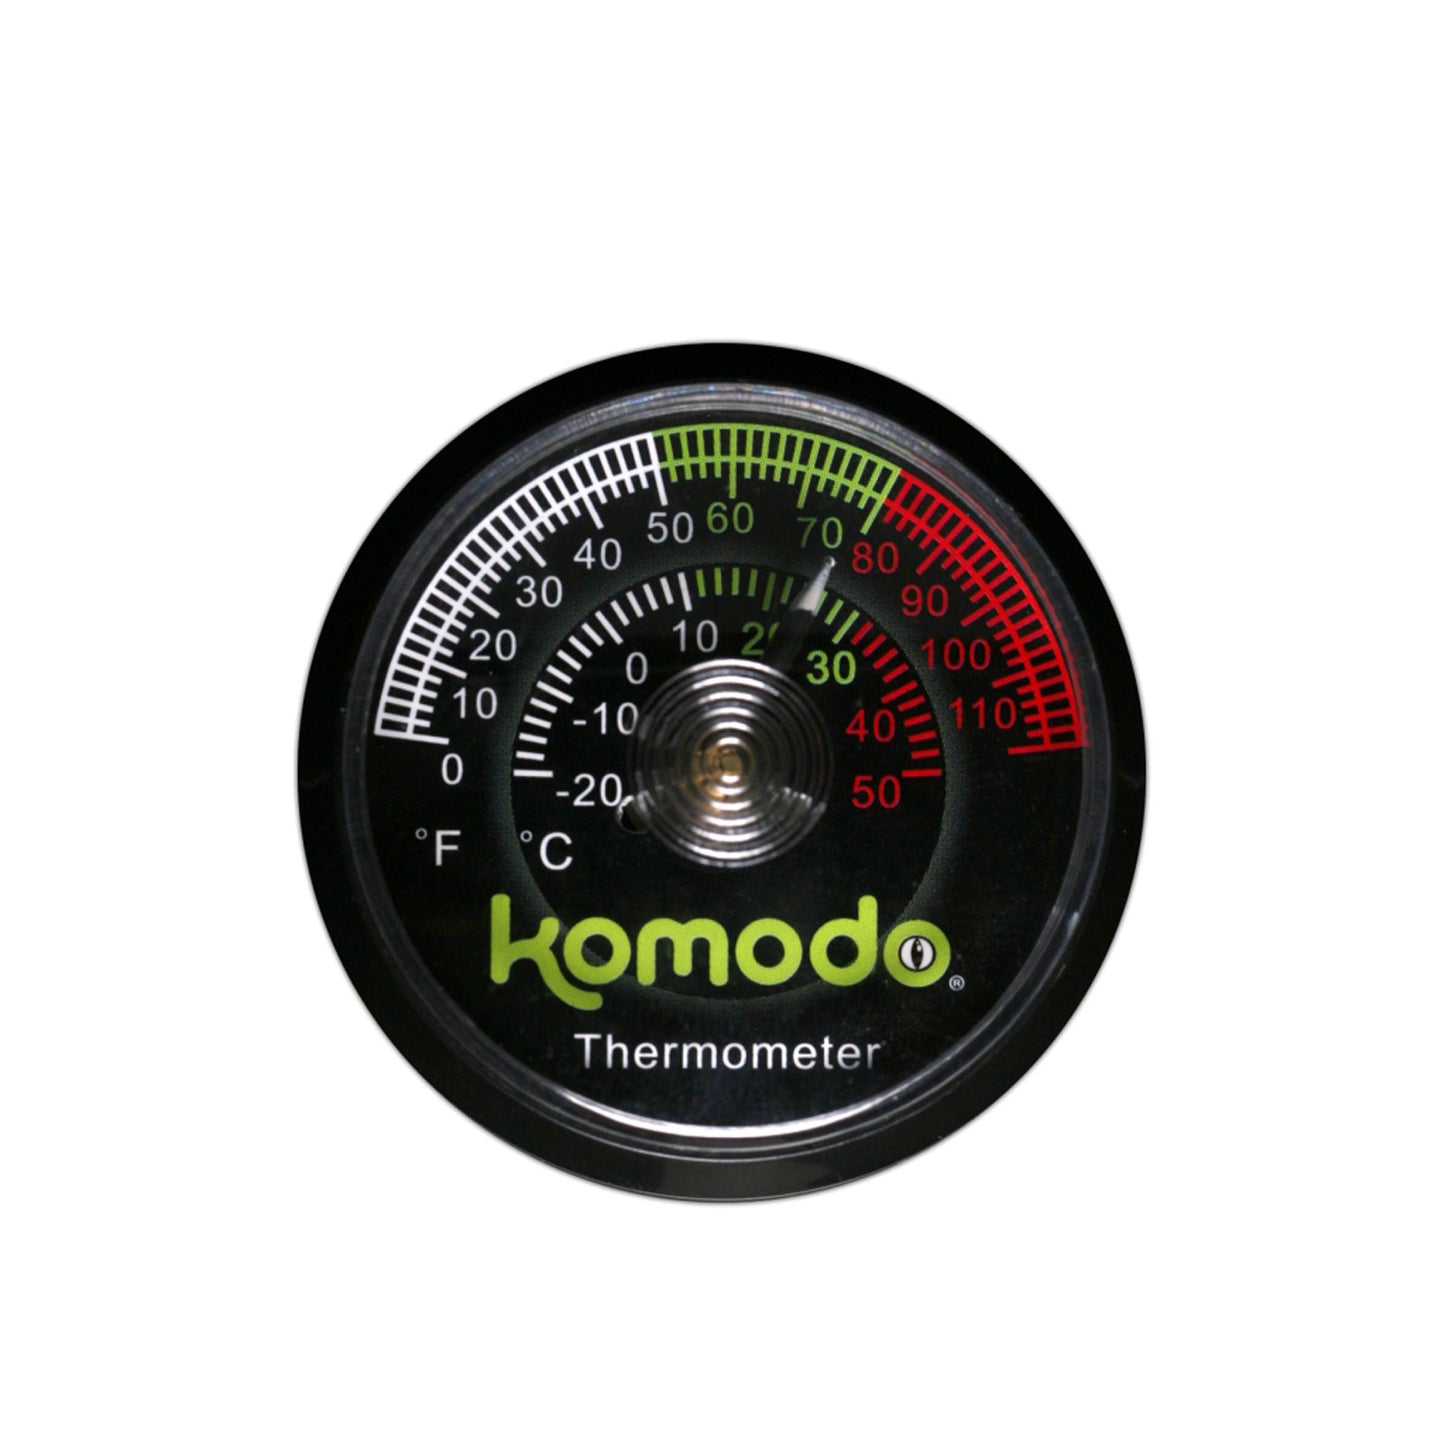 Komodo Analogue Thermometer